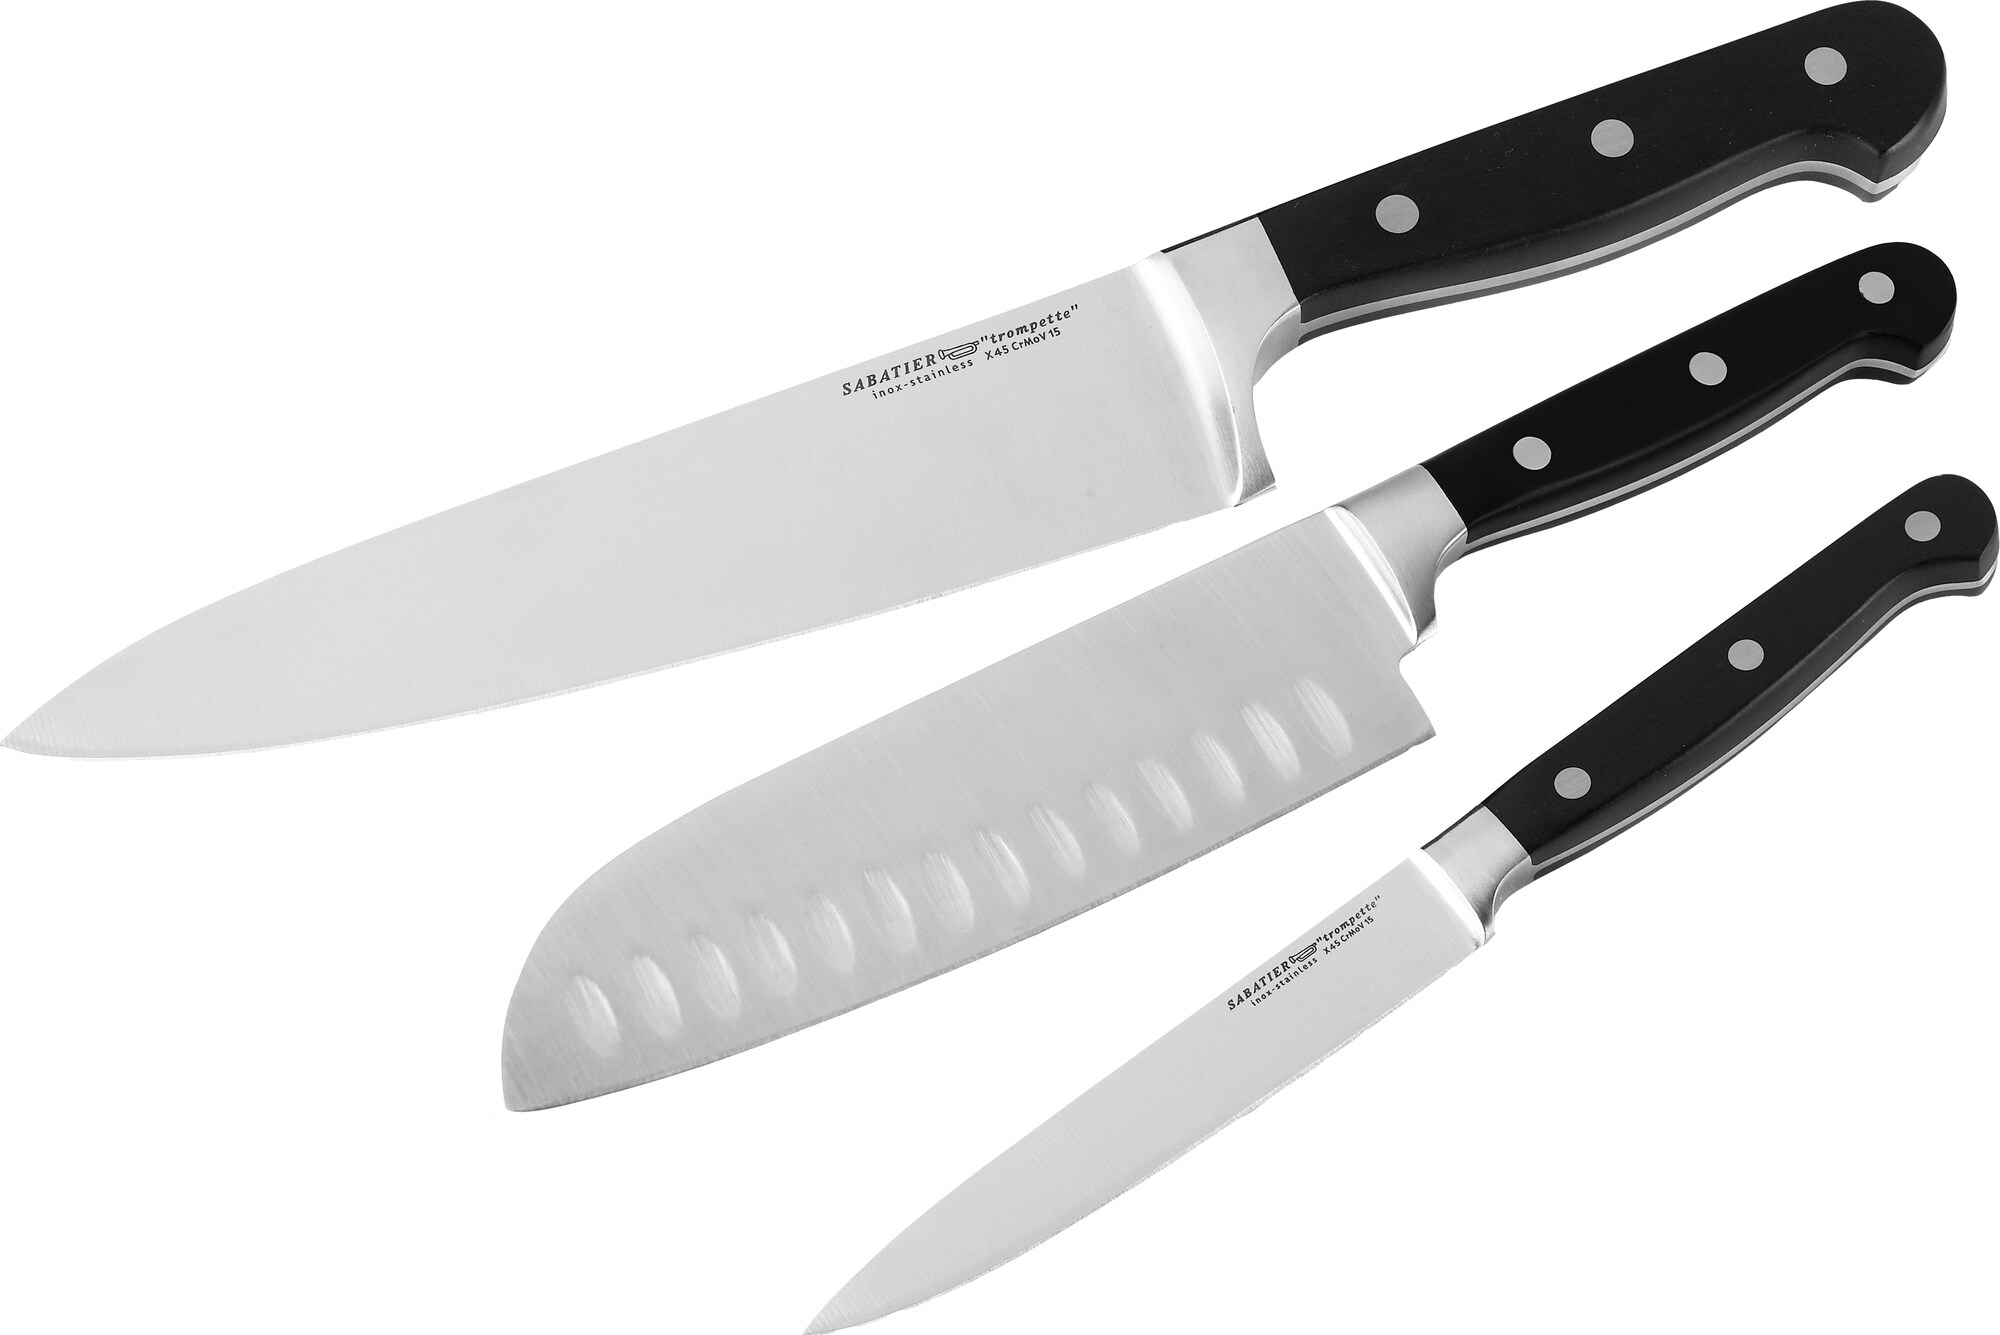 Sabatier Trompette 3-delt knivsæt SA103396 | Elgiganten